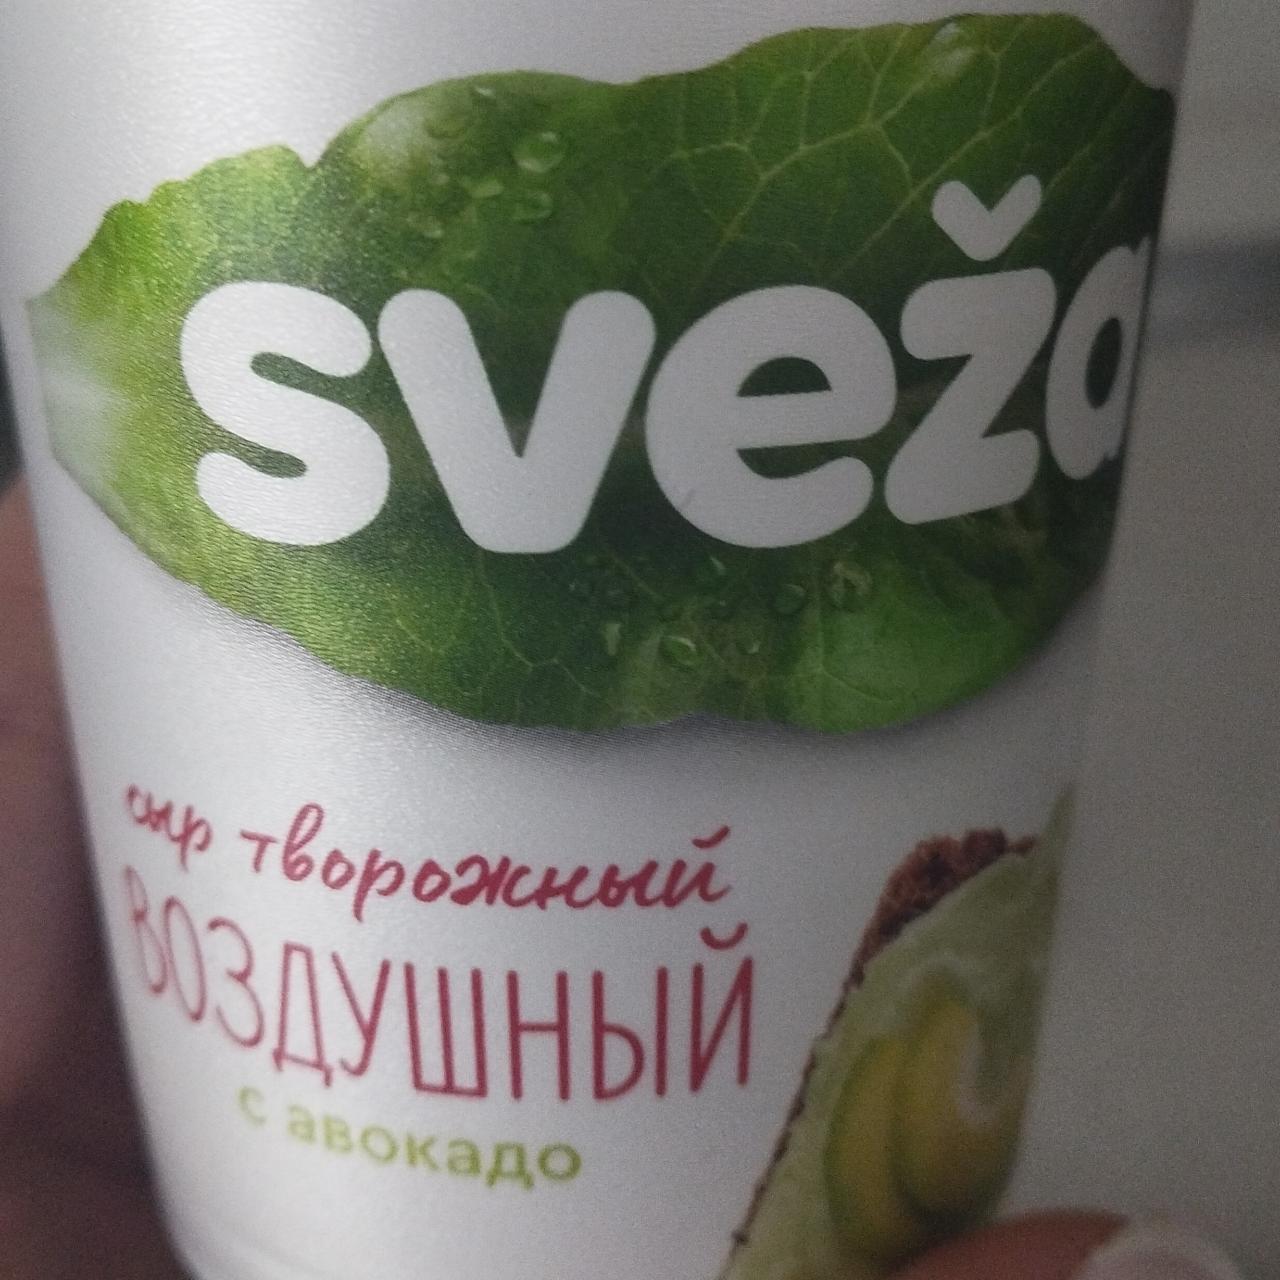 Фото - Сыр творожный Воздушный 60% с авокадо Sveza Савушкин